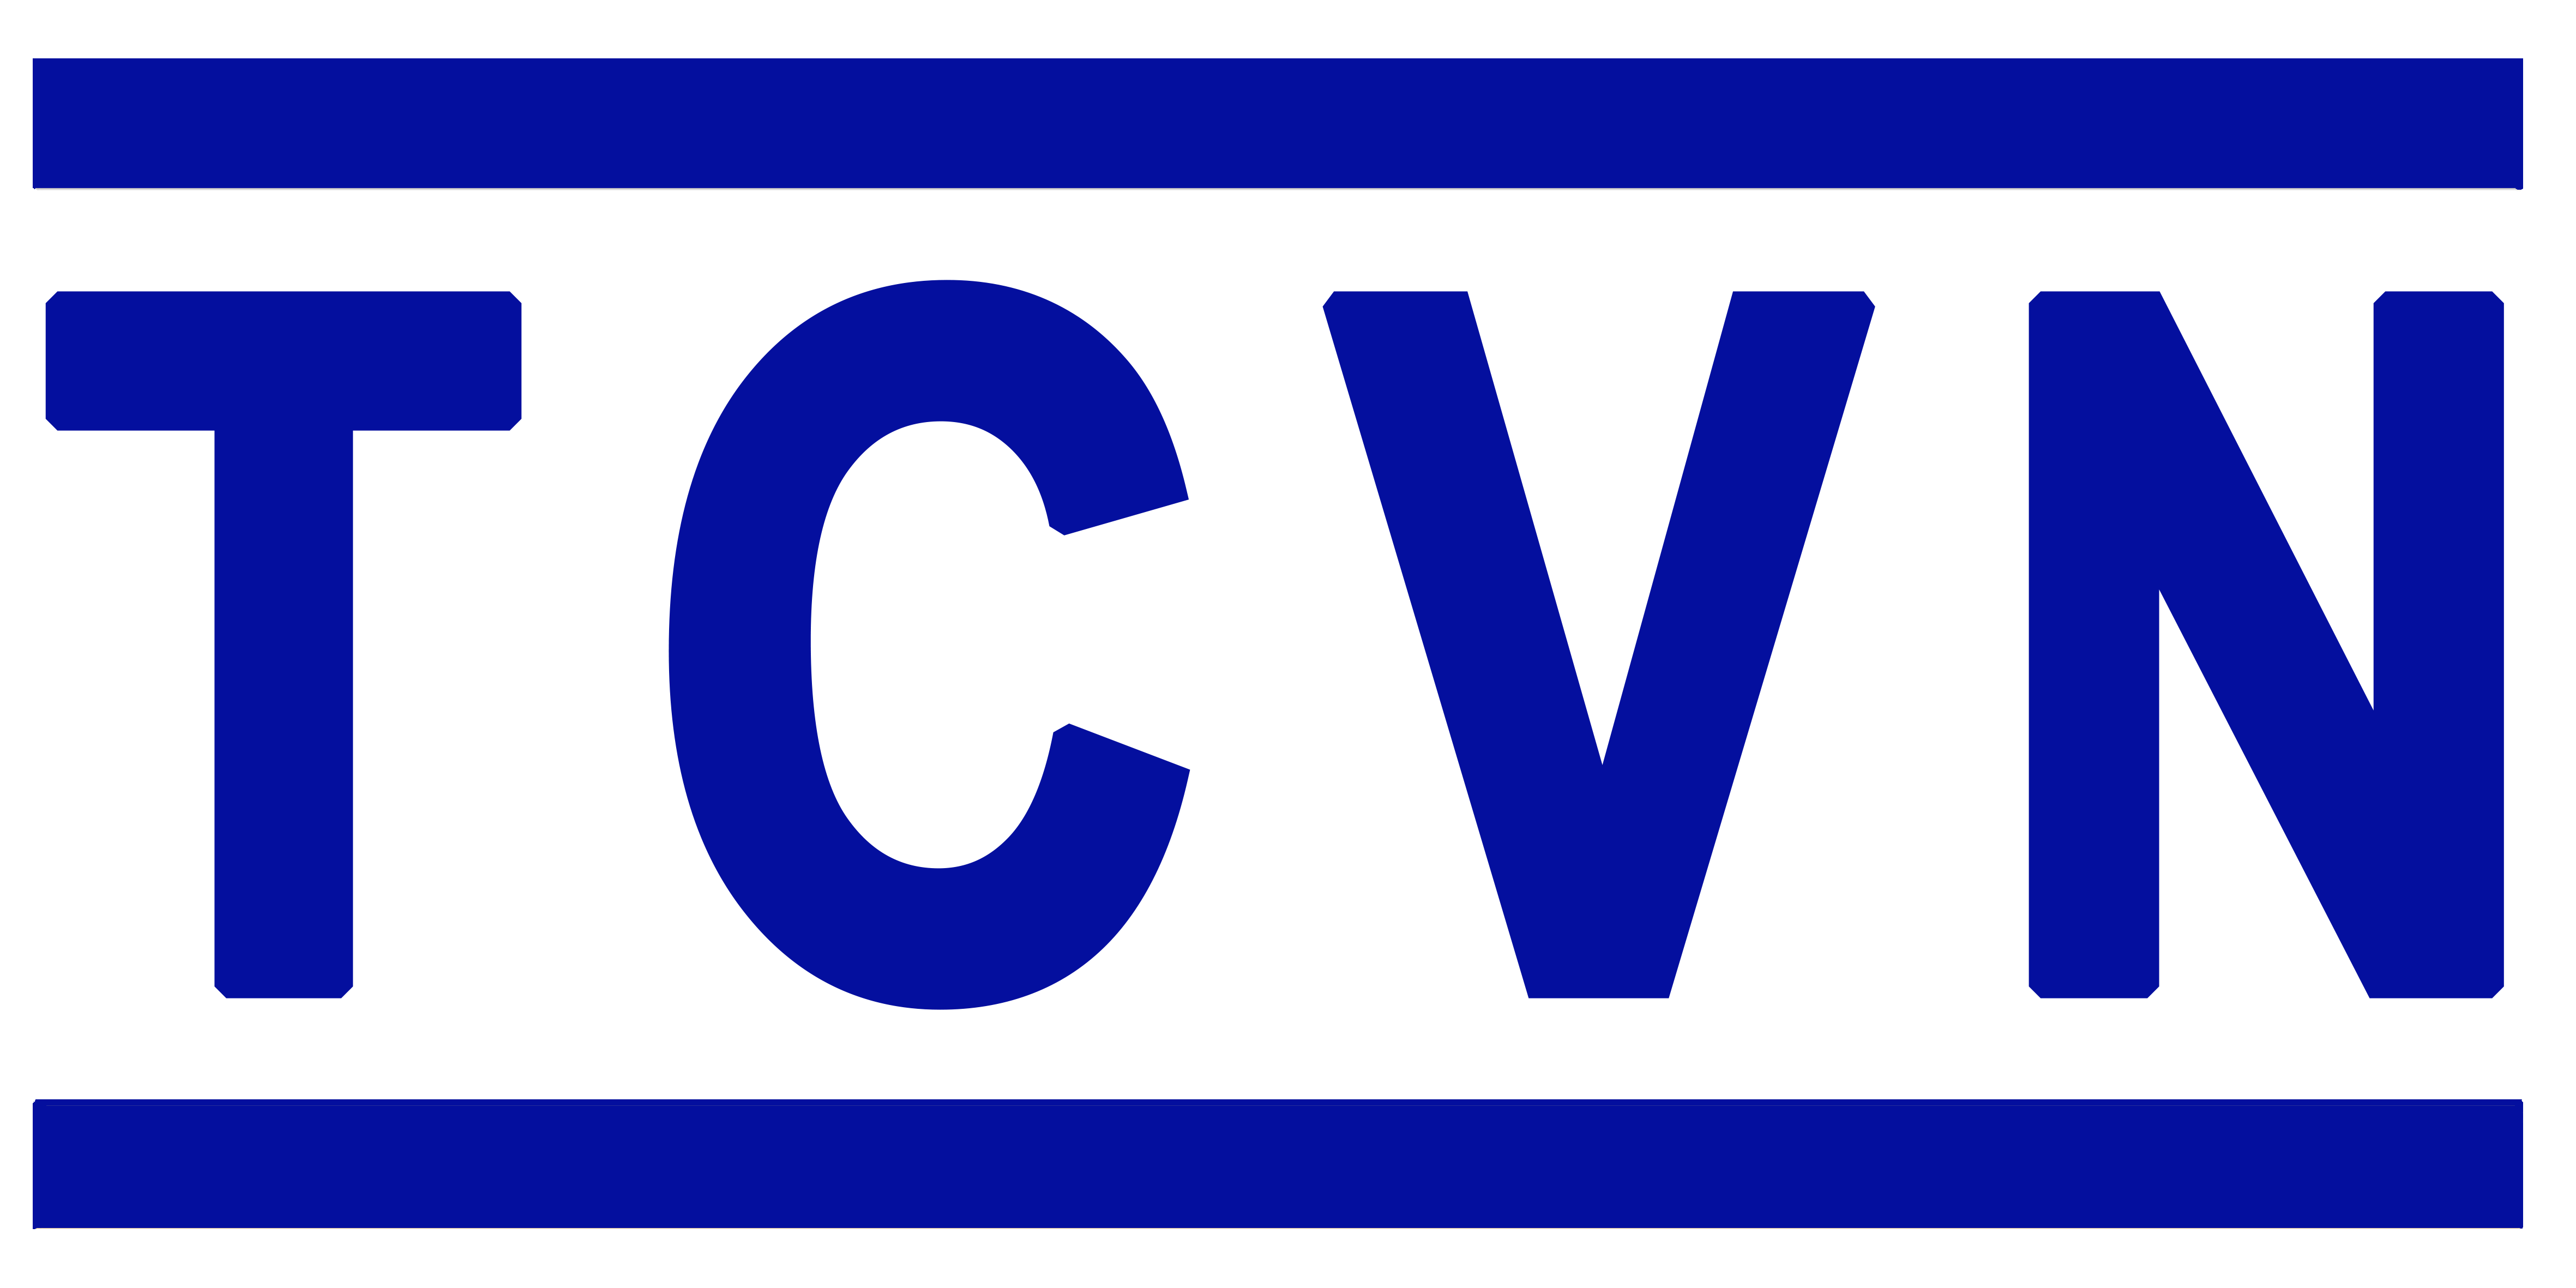 Danh mục tiêu chuẩn Quốc Gia (TCVN)  tháng 4 năm 2022